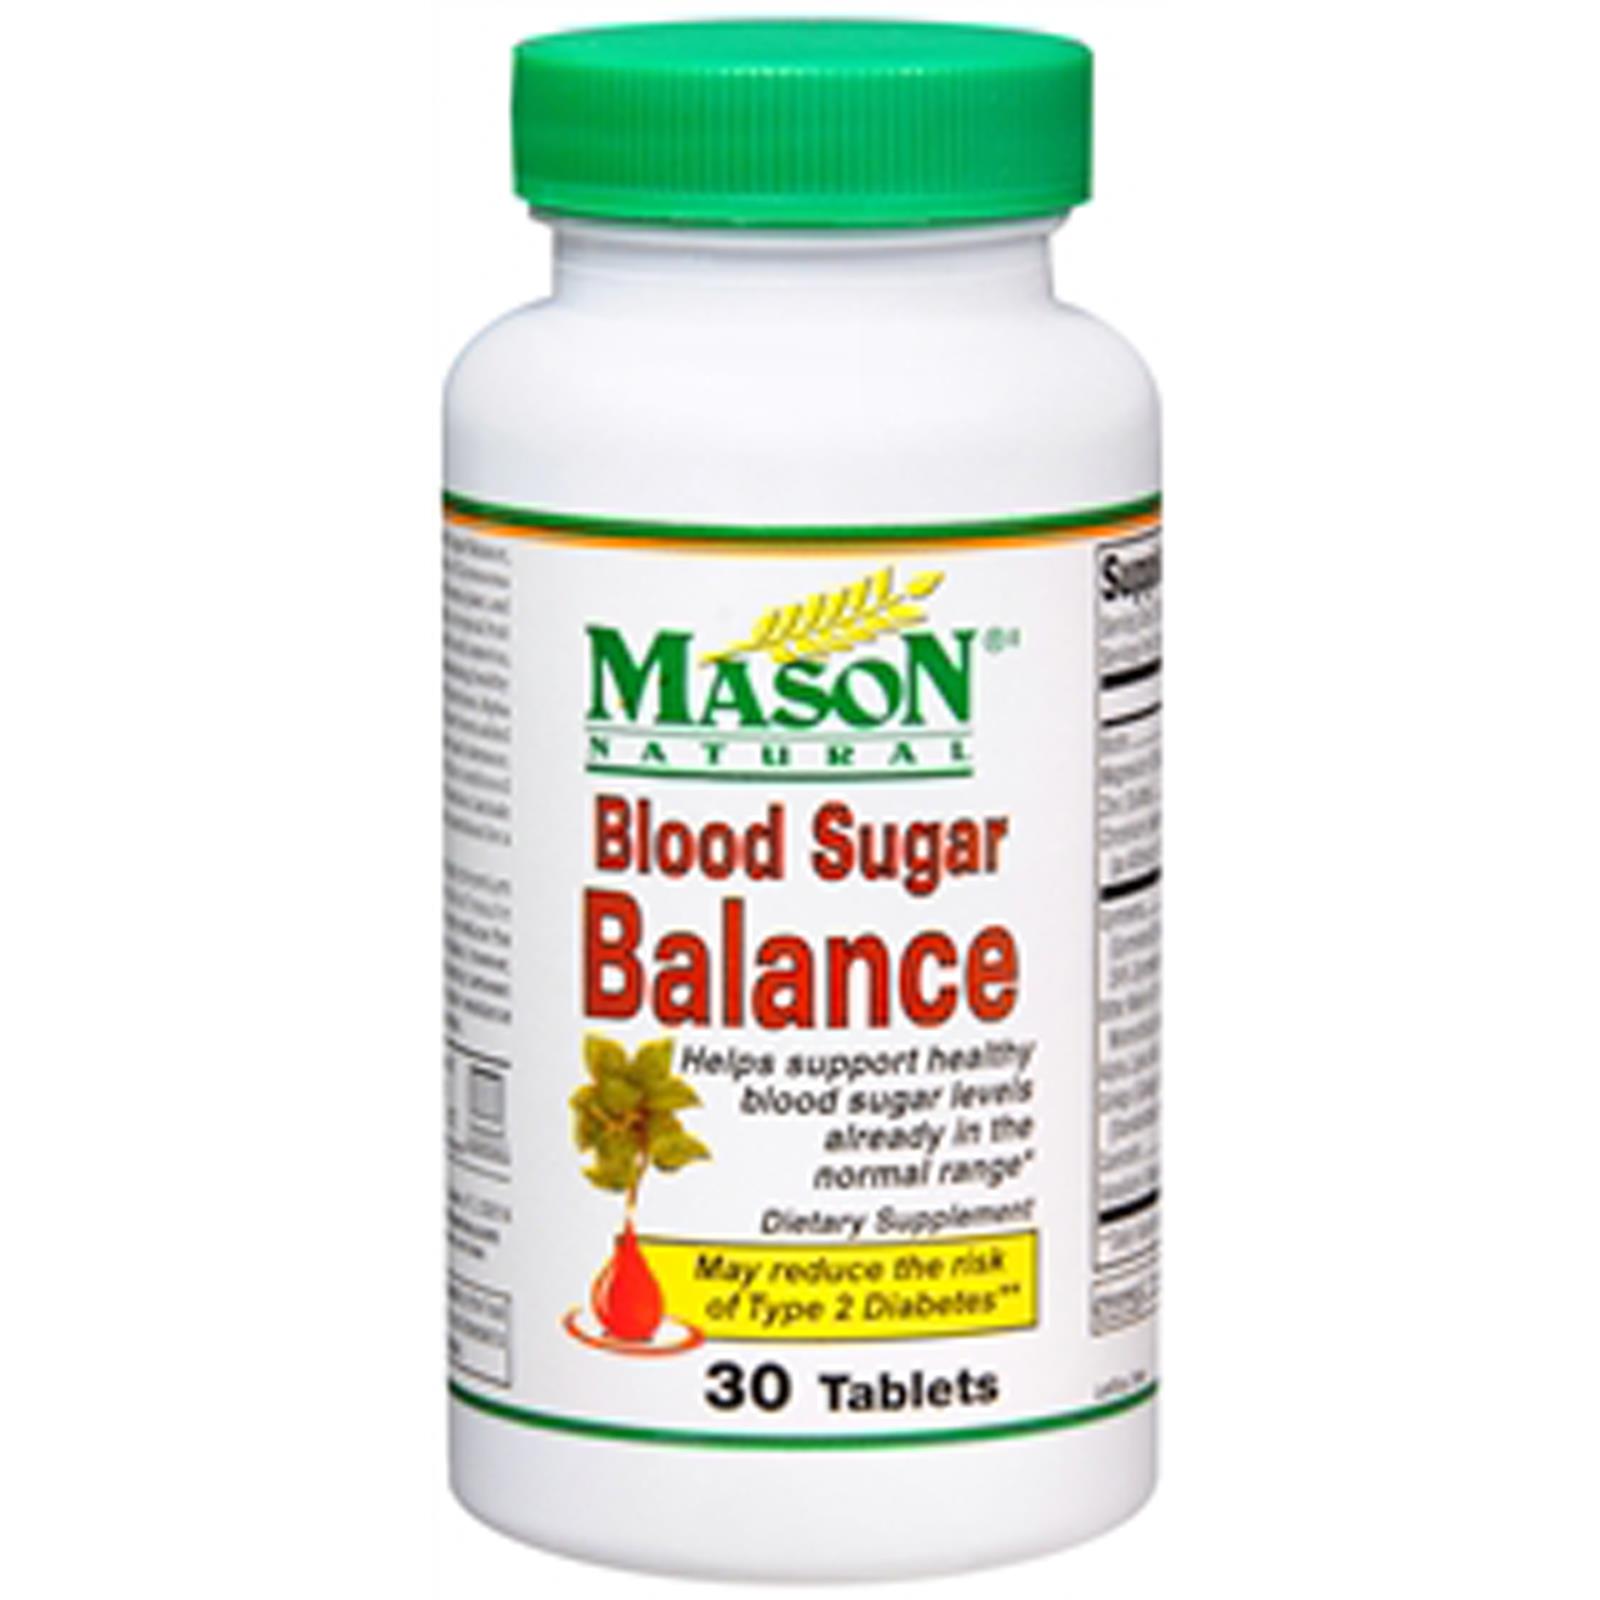 Mason Natural Blood Sugar Balance   30 Tablets